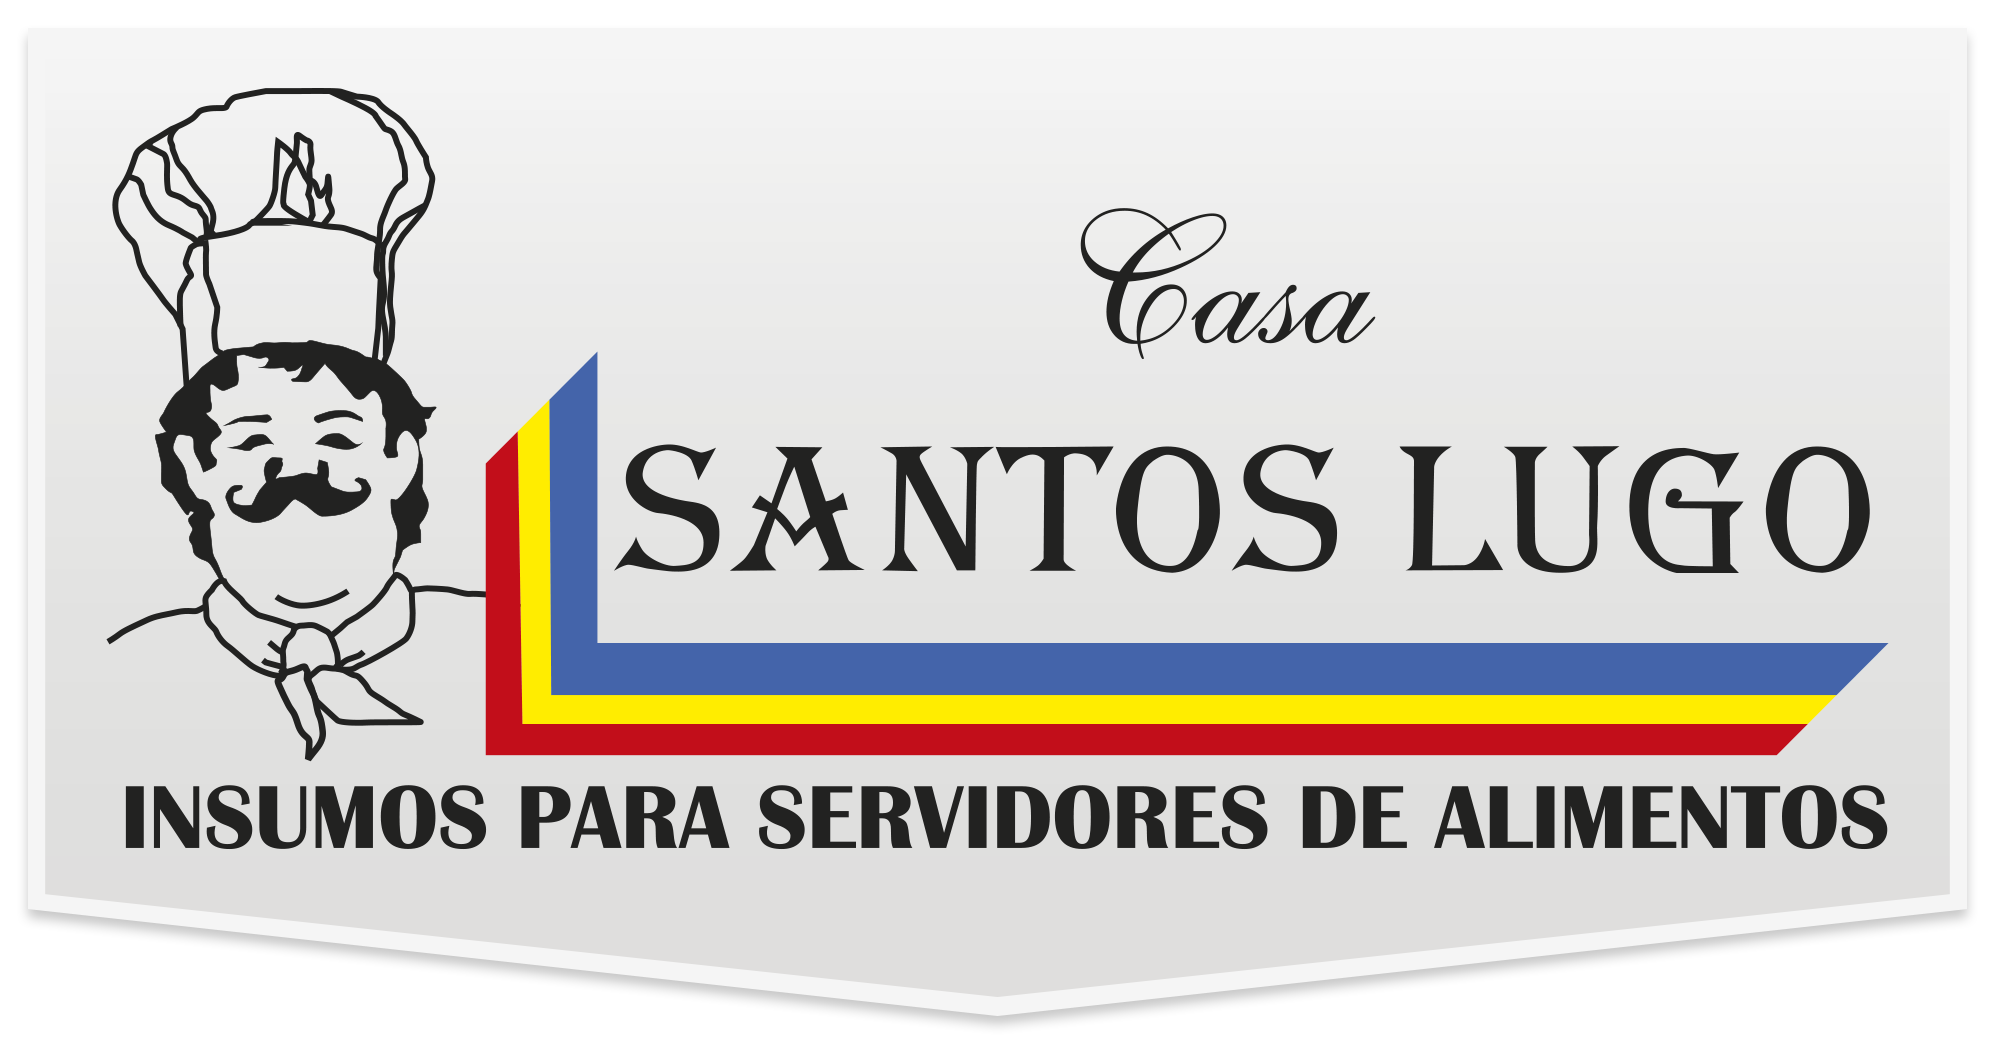 Santos Lugo | Categoría Bebidas